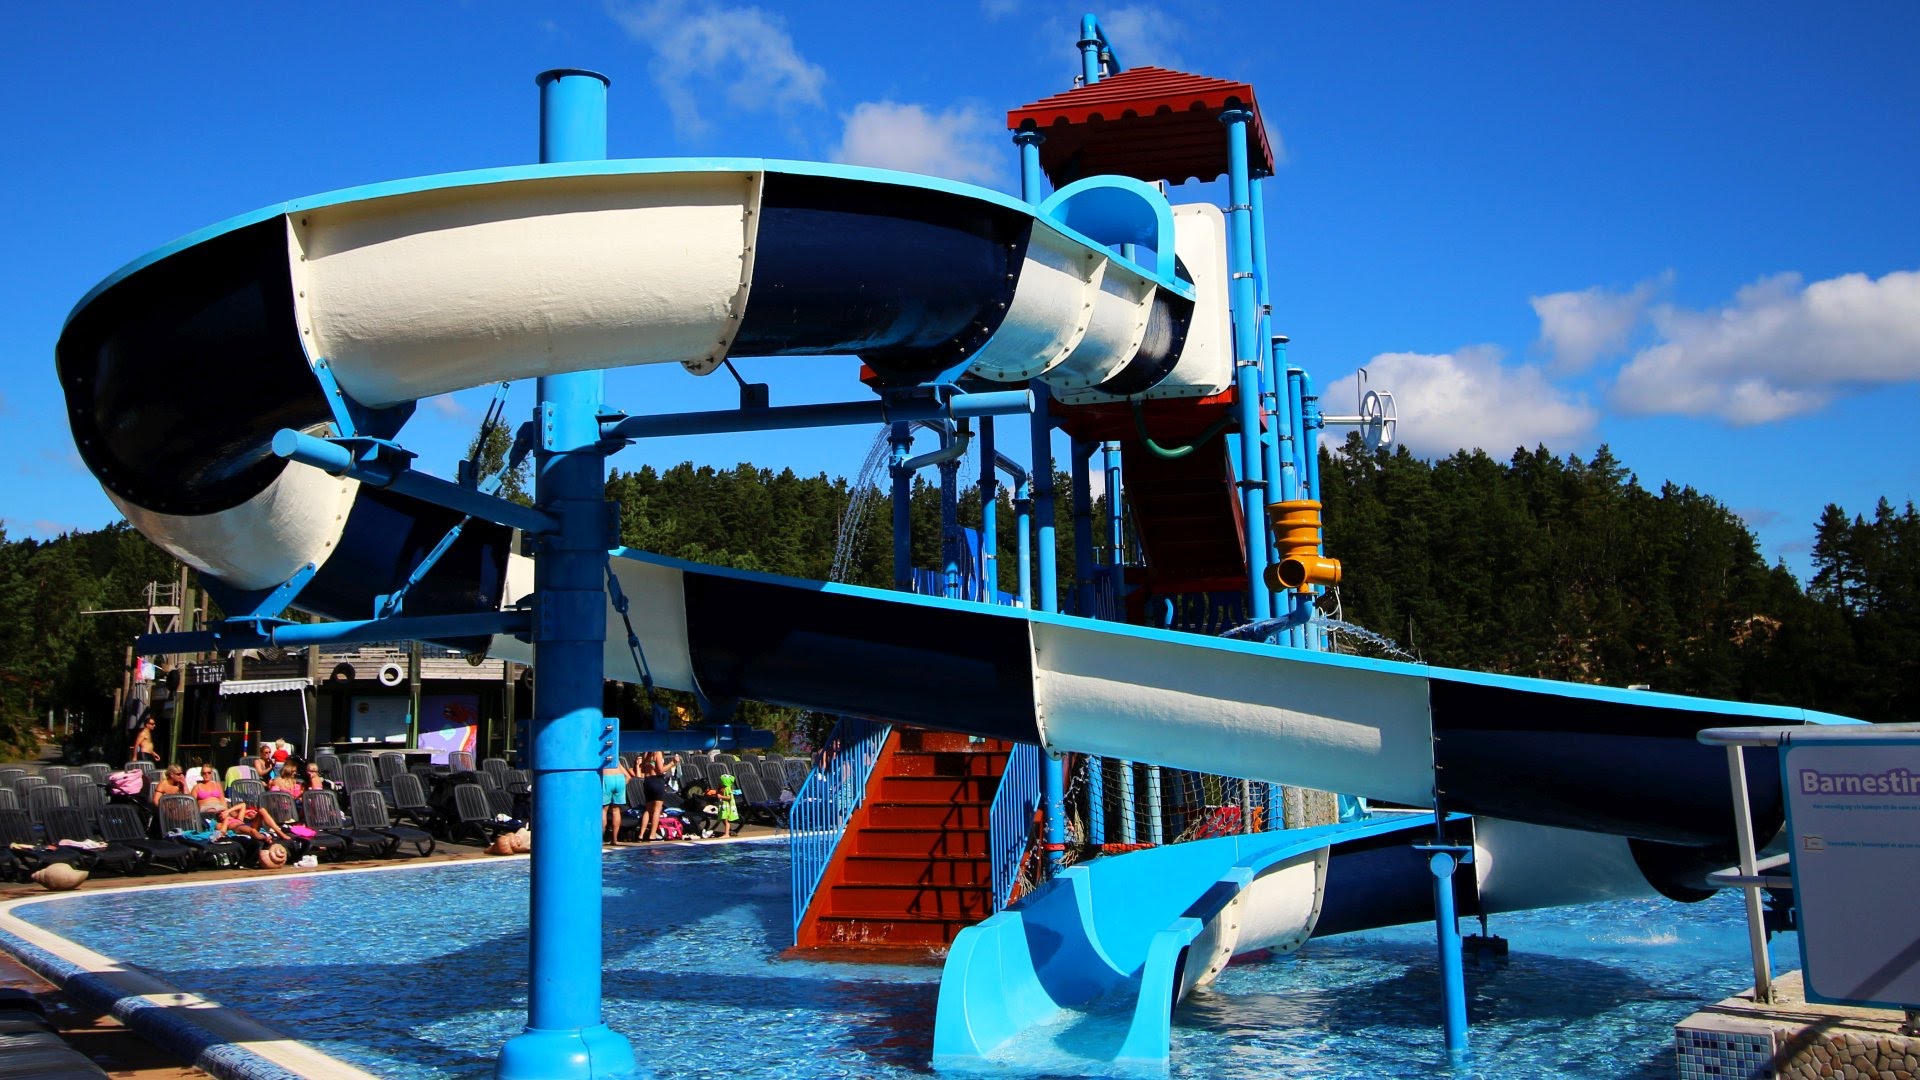 offene Riesenrutsche :: Water Play House Slide | Dyreparken Badelandet Kristiansand